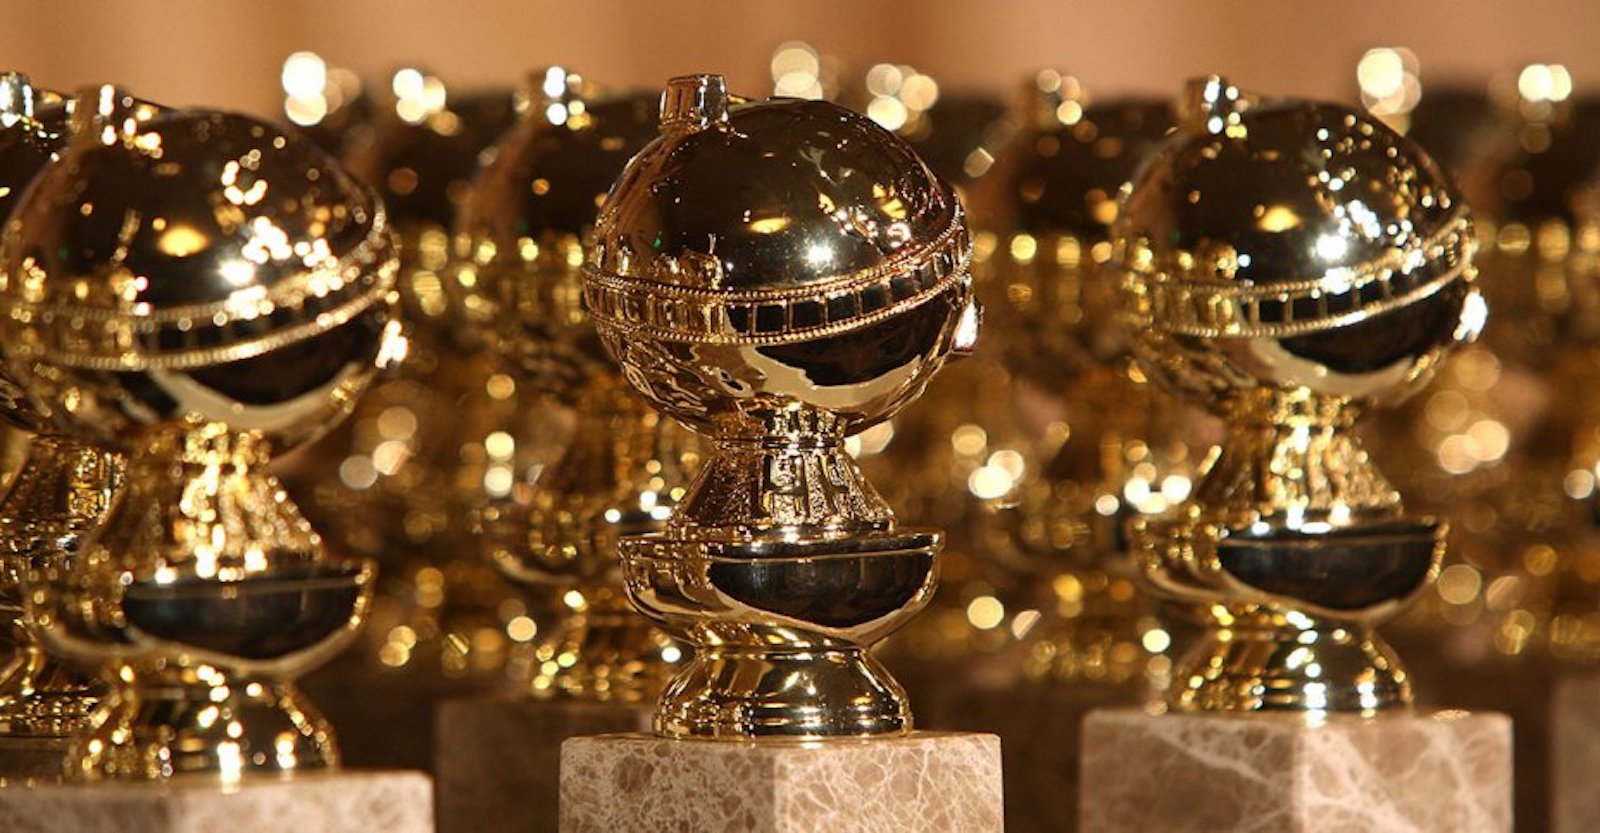 lined up Golden Globes Awards